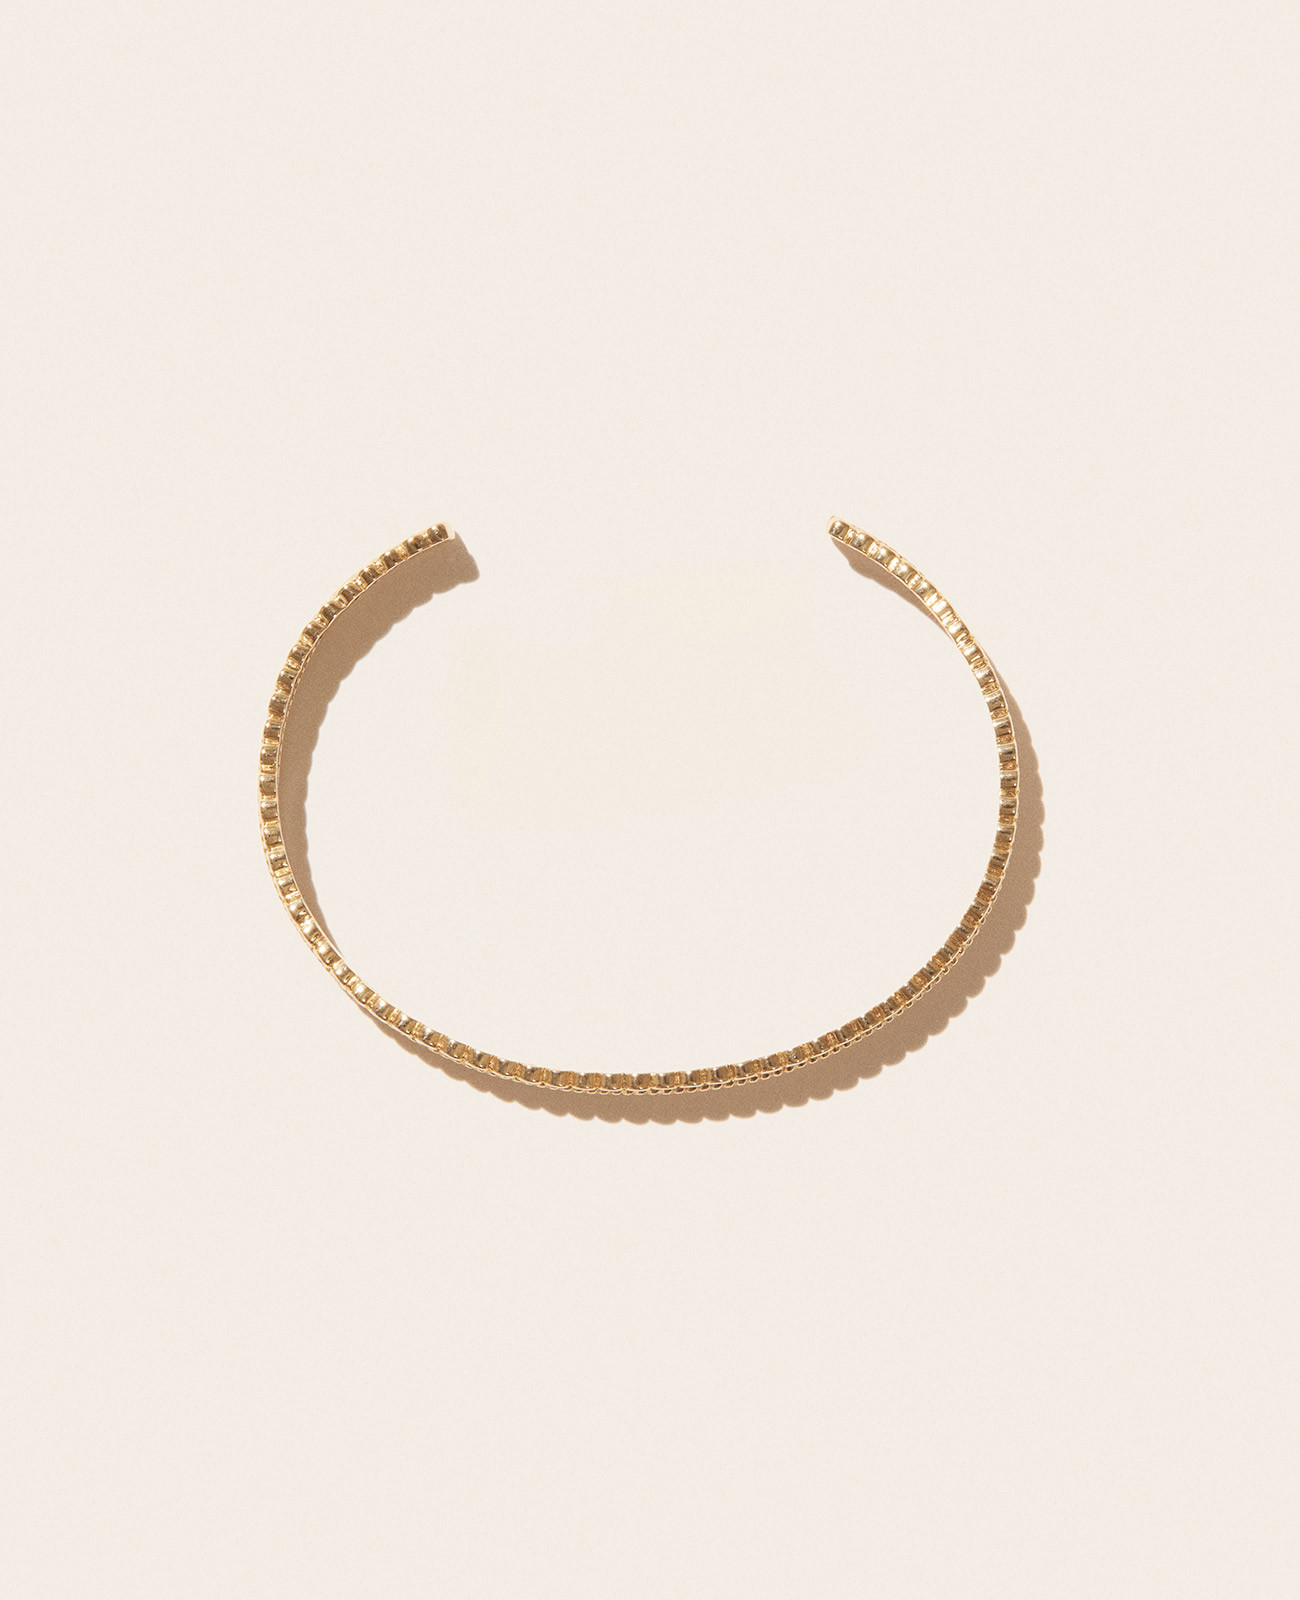 JIL N°2 bracelet pascale monvoisin jewelry paris